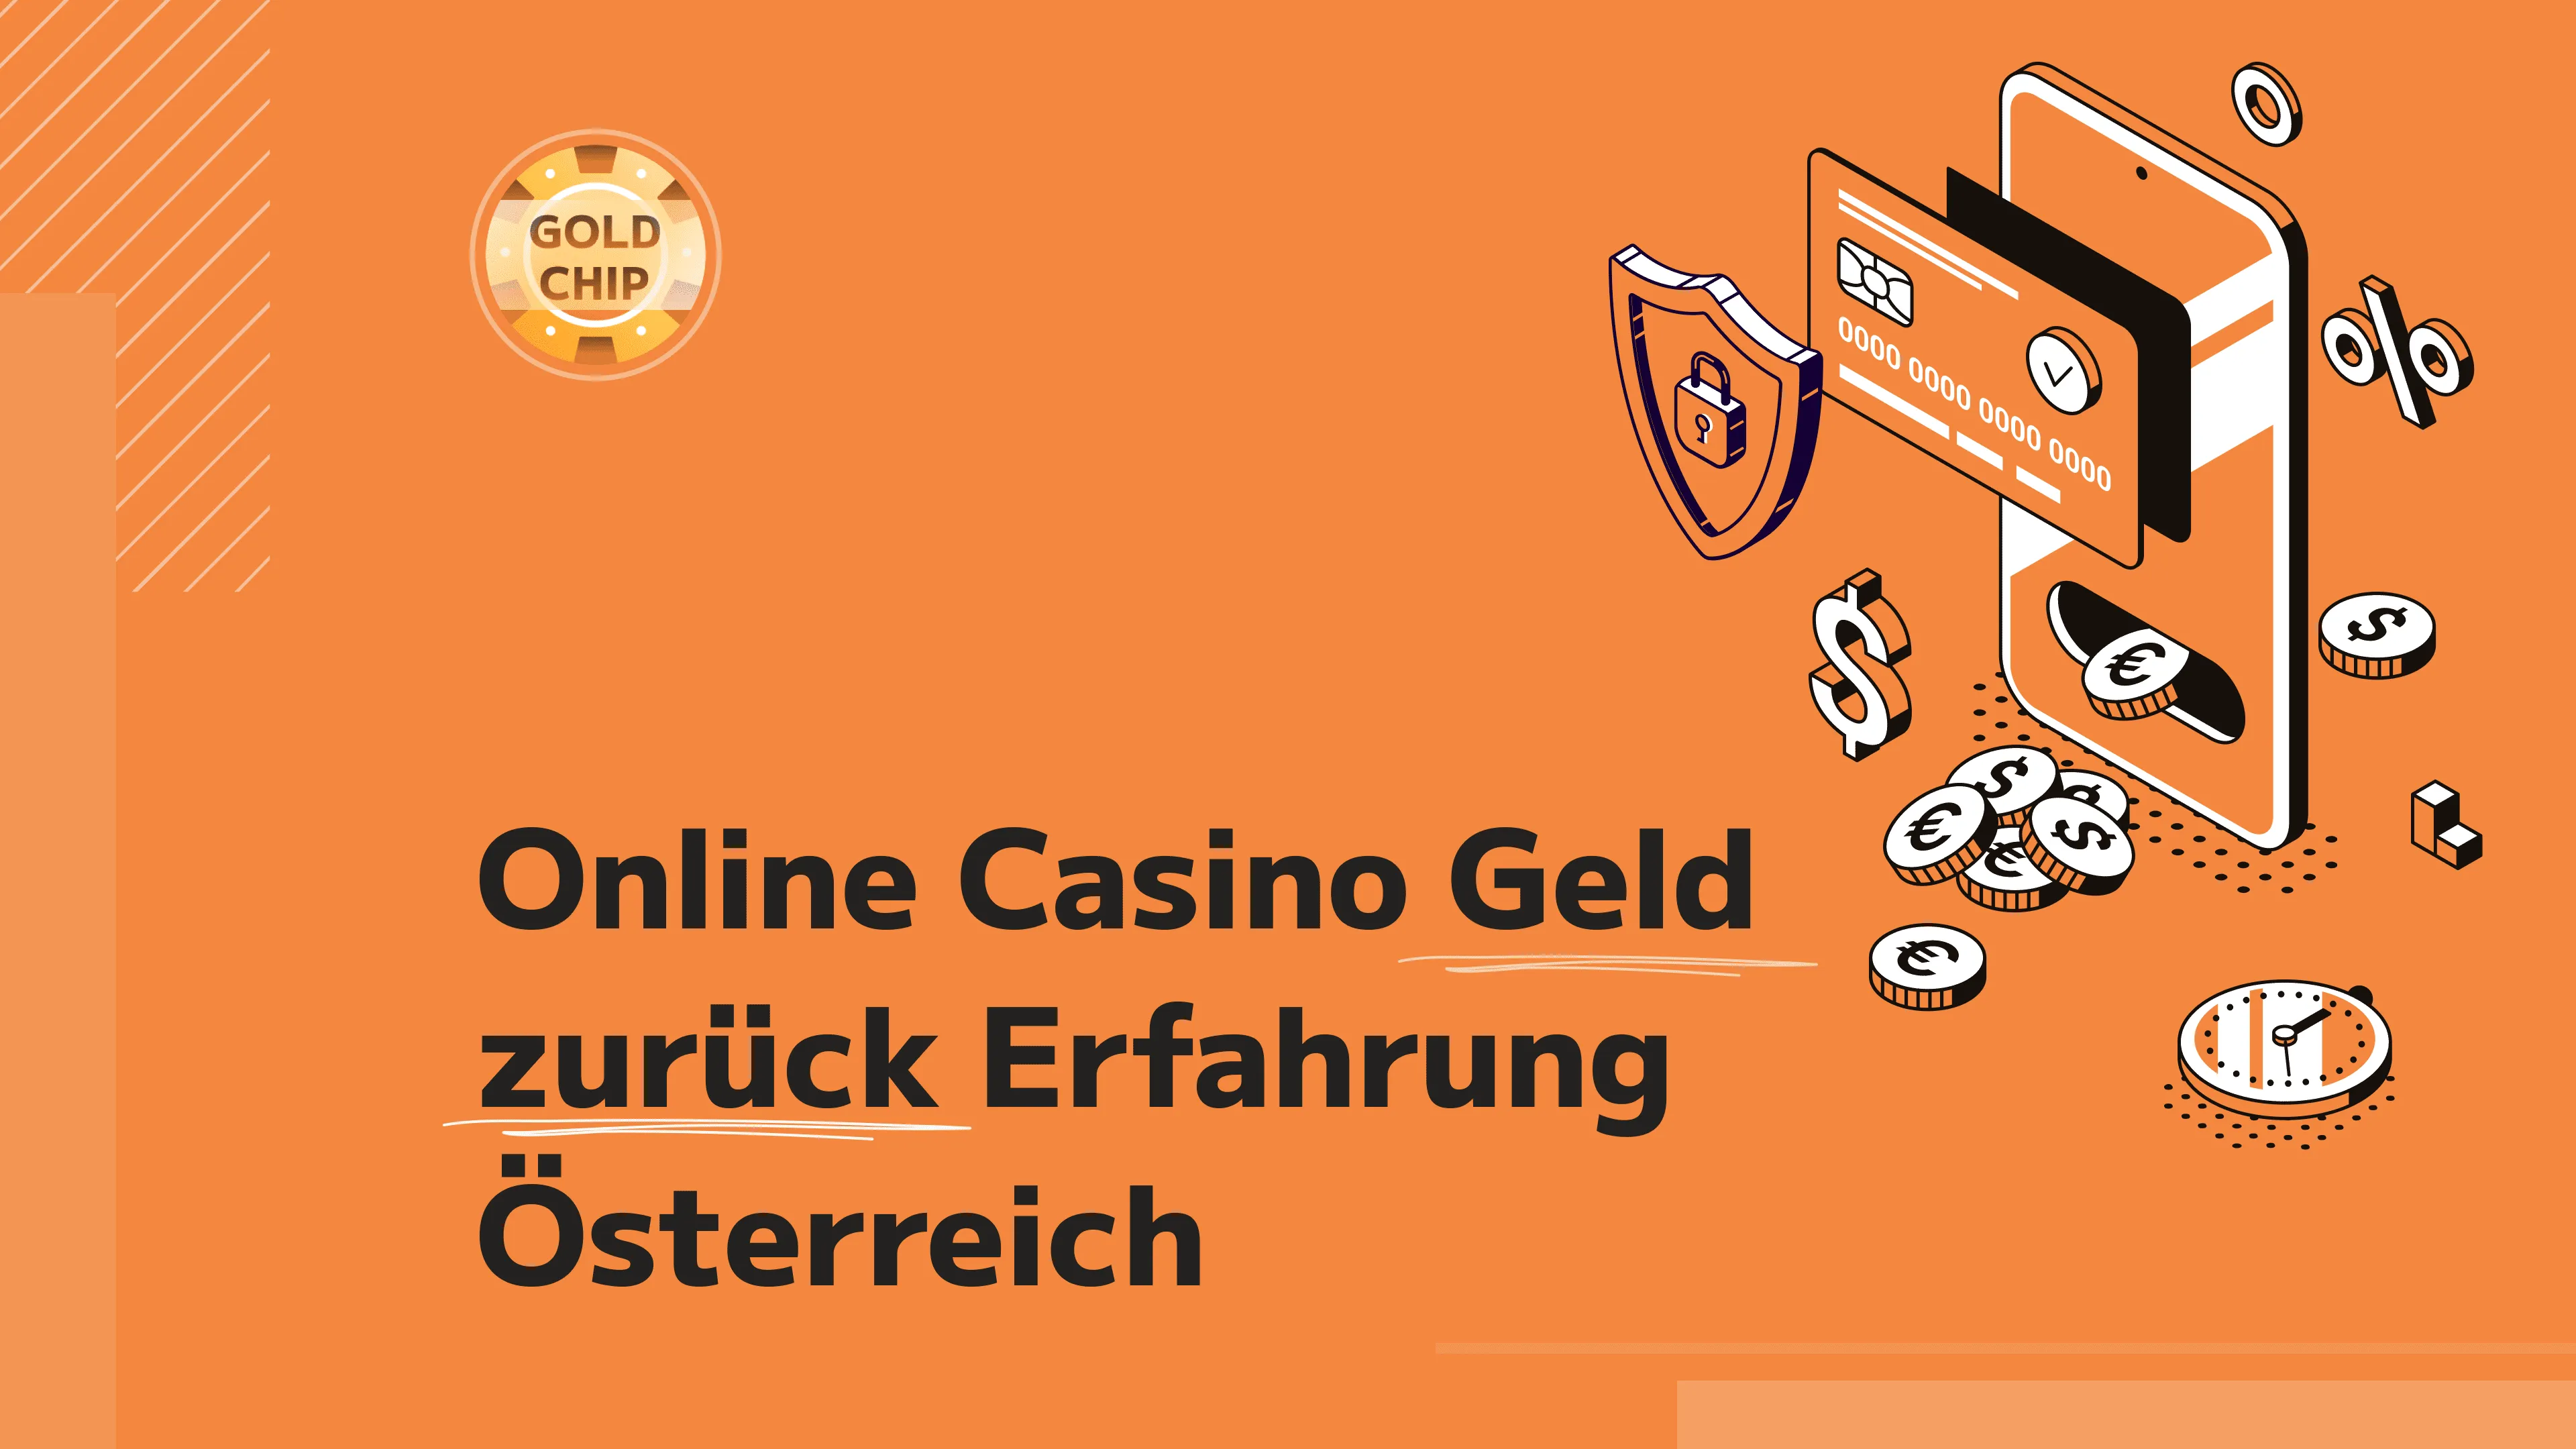 3 Arten von beste Online Casinos Österreich: Welches macht das meiste Geld?